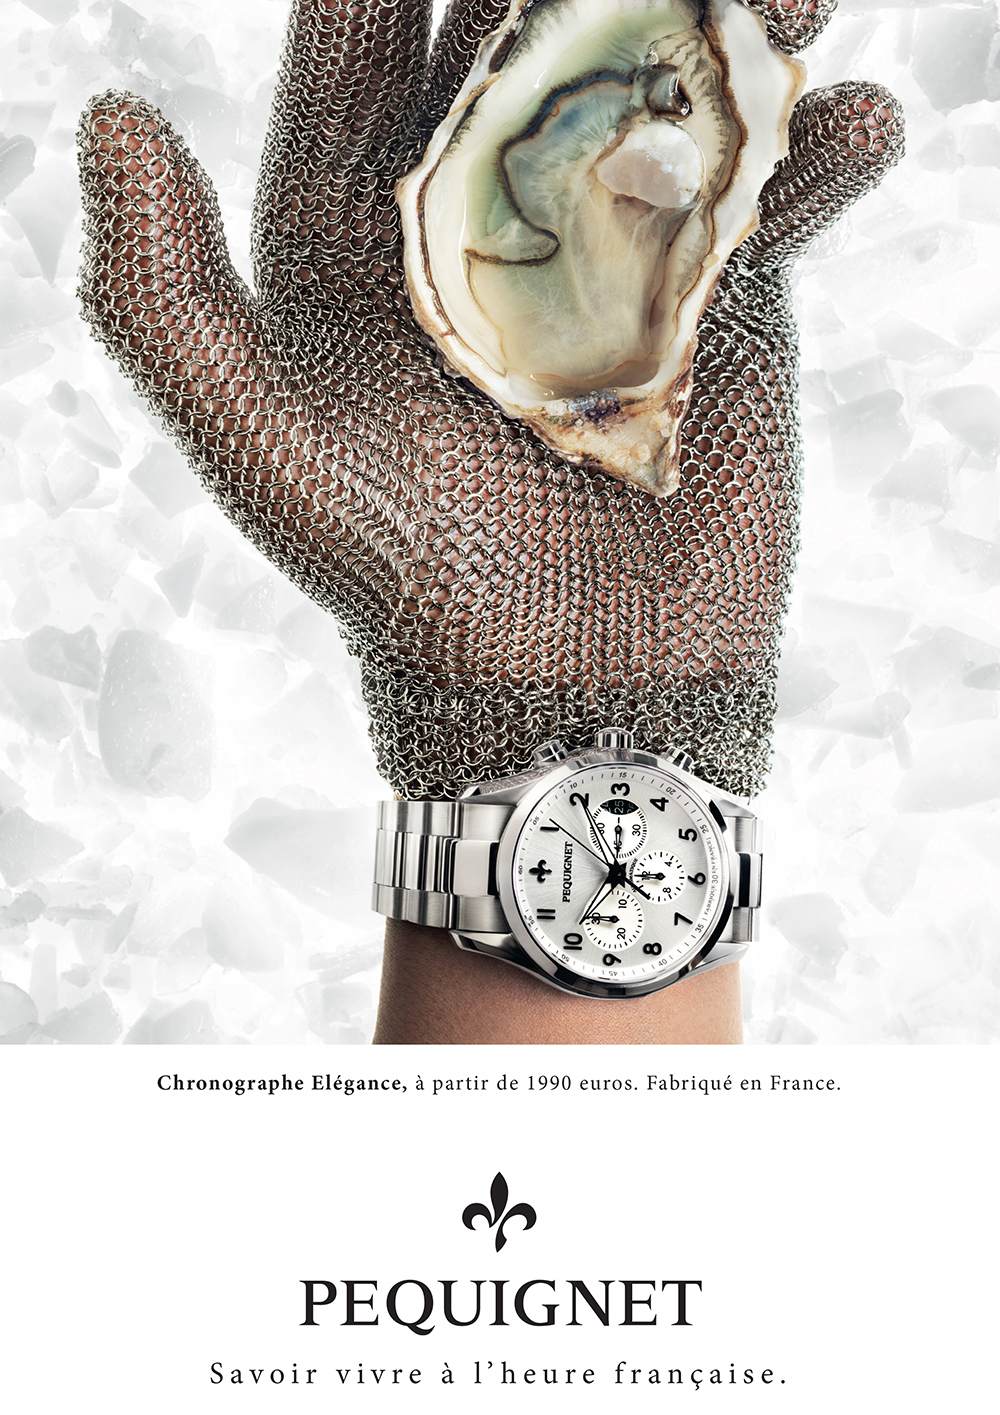 pequignet-montres-publicite-marketing-luxe-savoir-vivre-poignet-agence-buy-ideas-2015-1